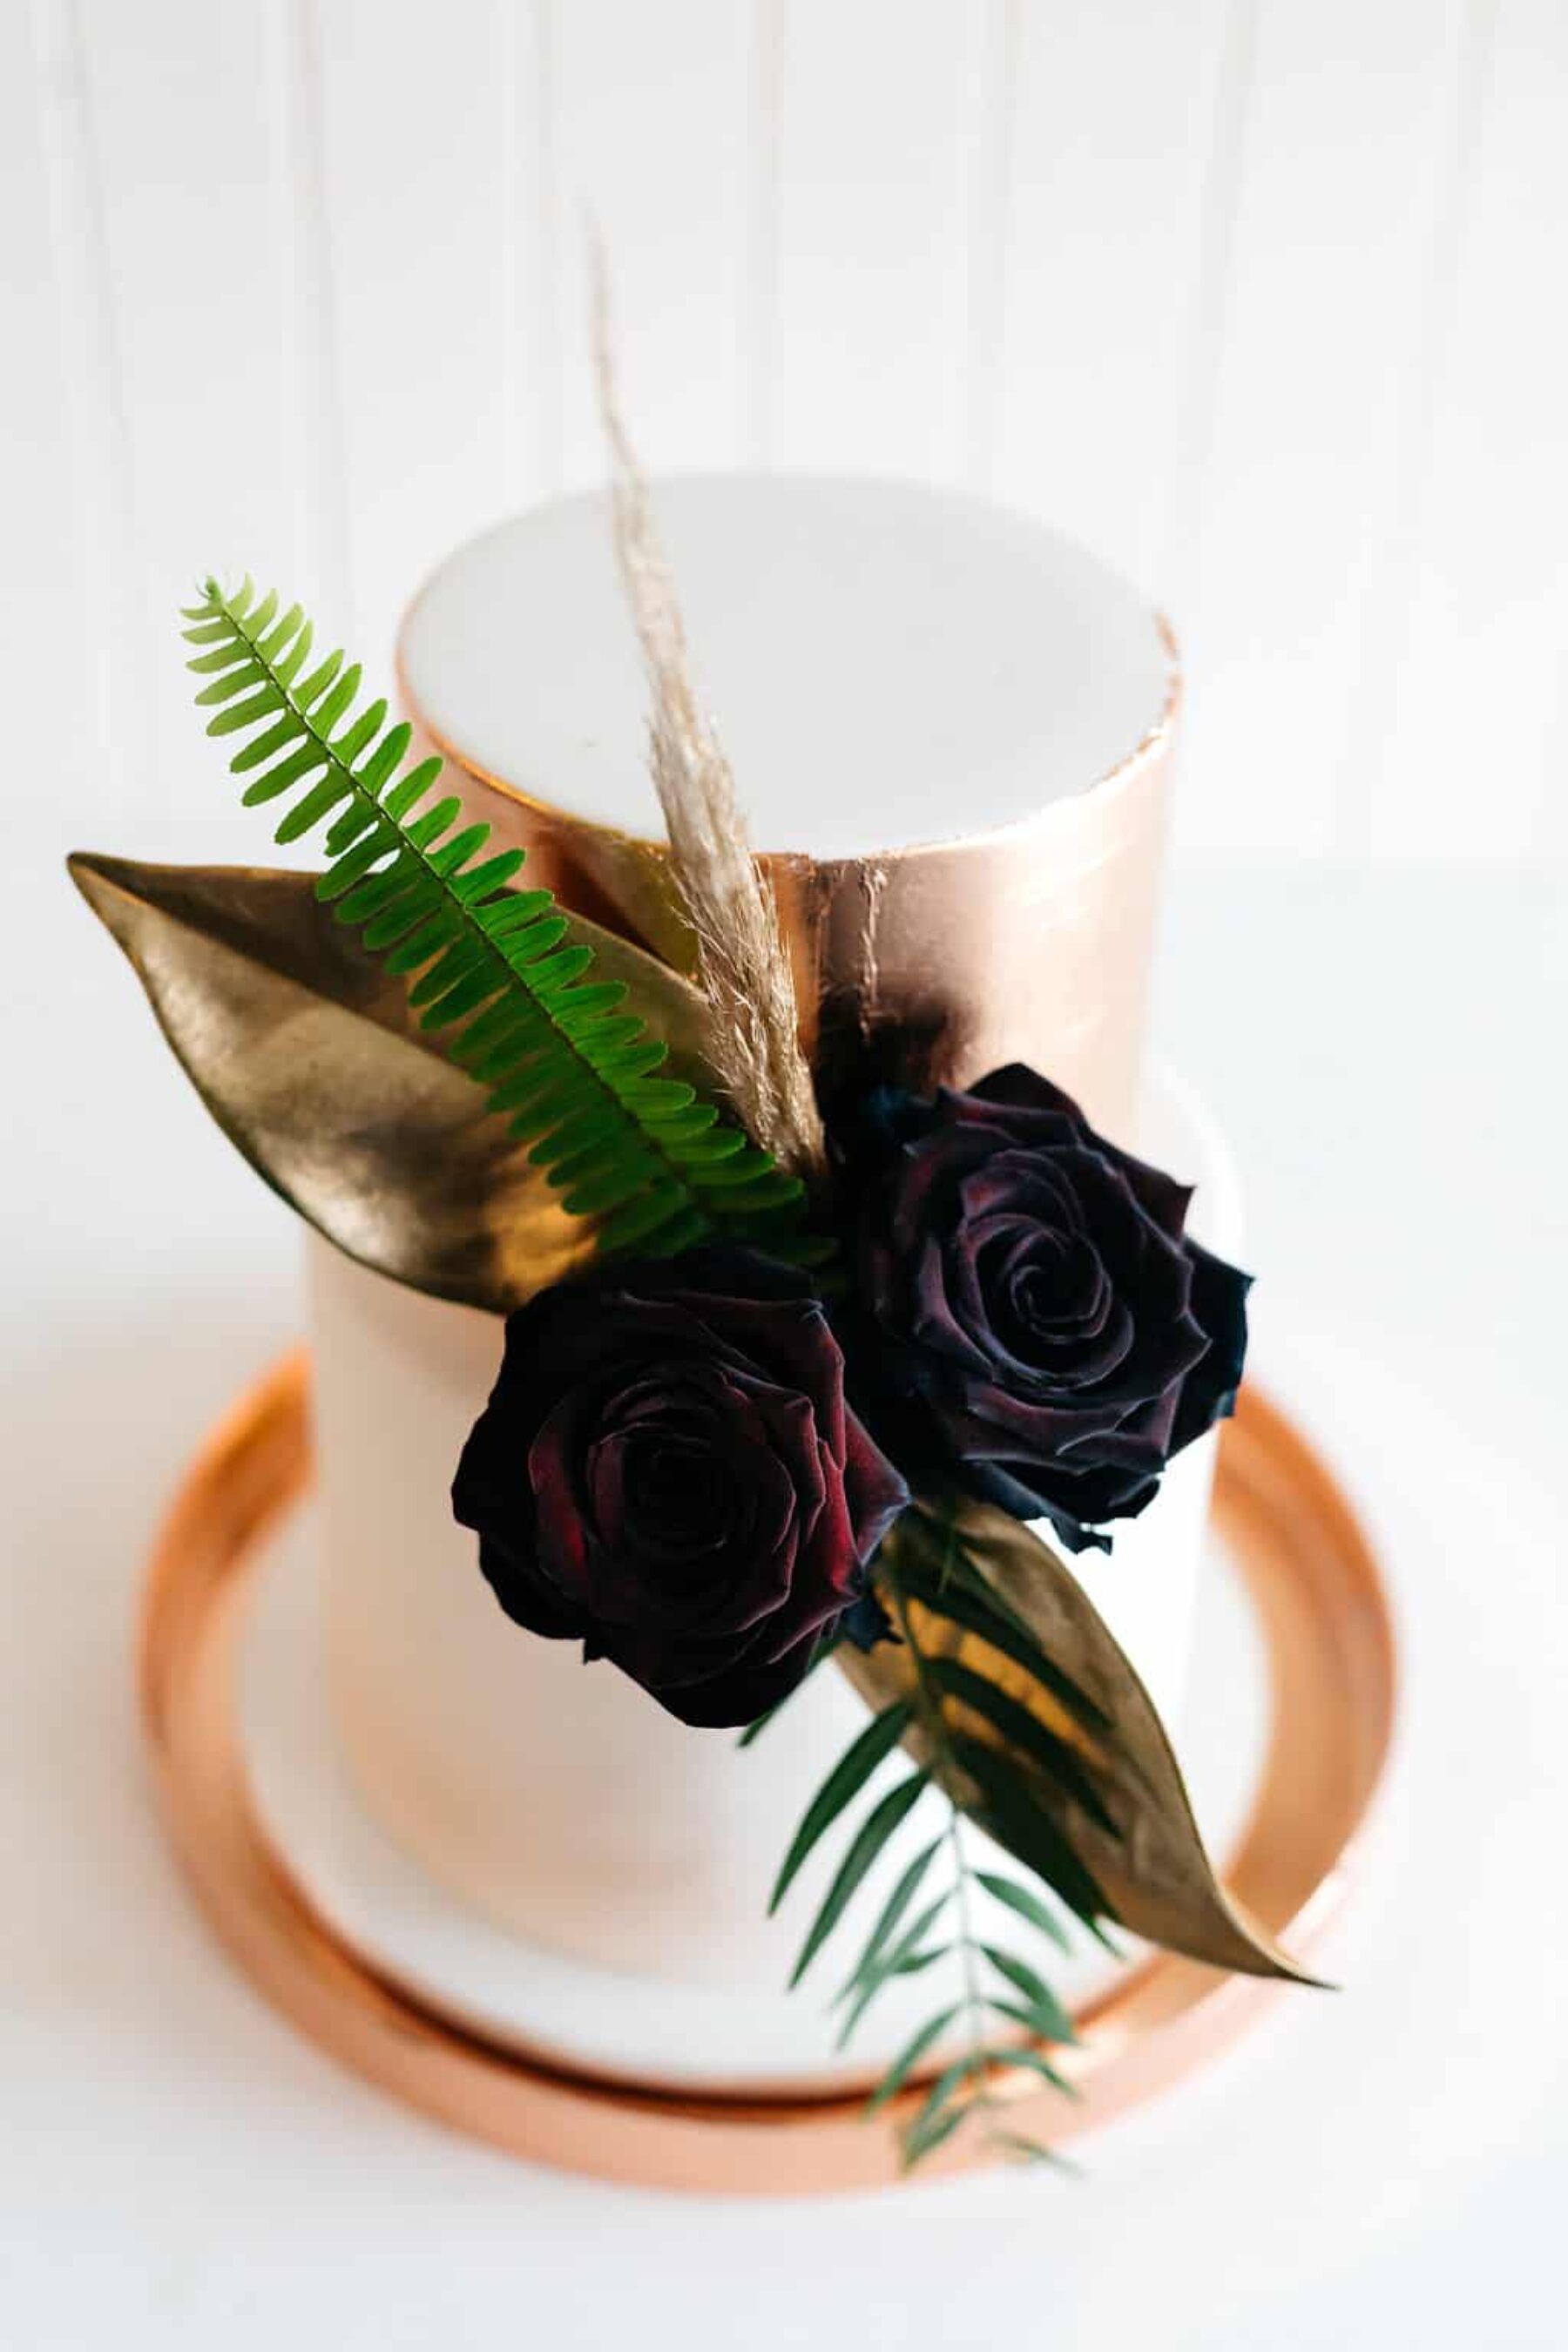 modern metallic wedding cake with black roses